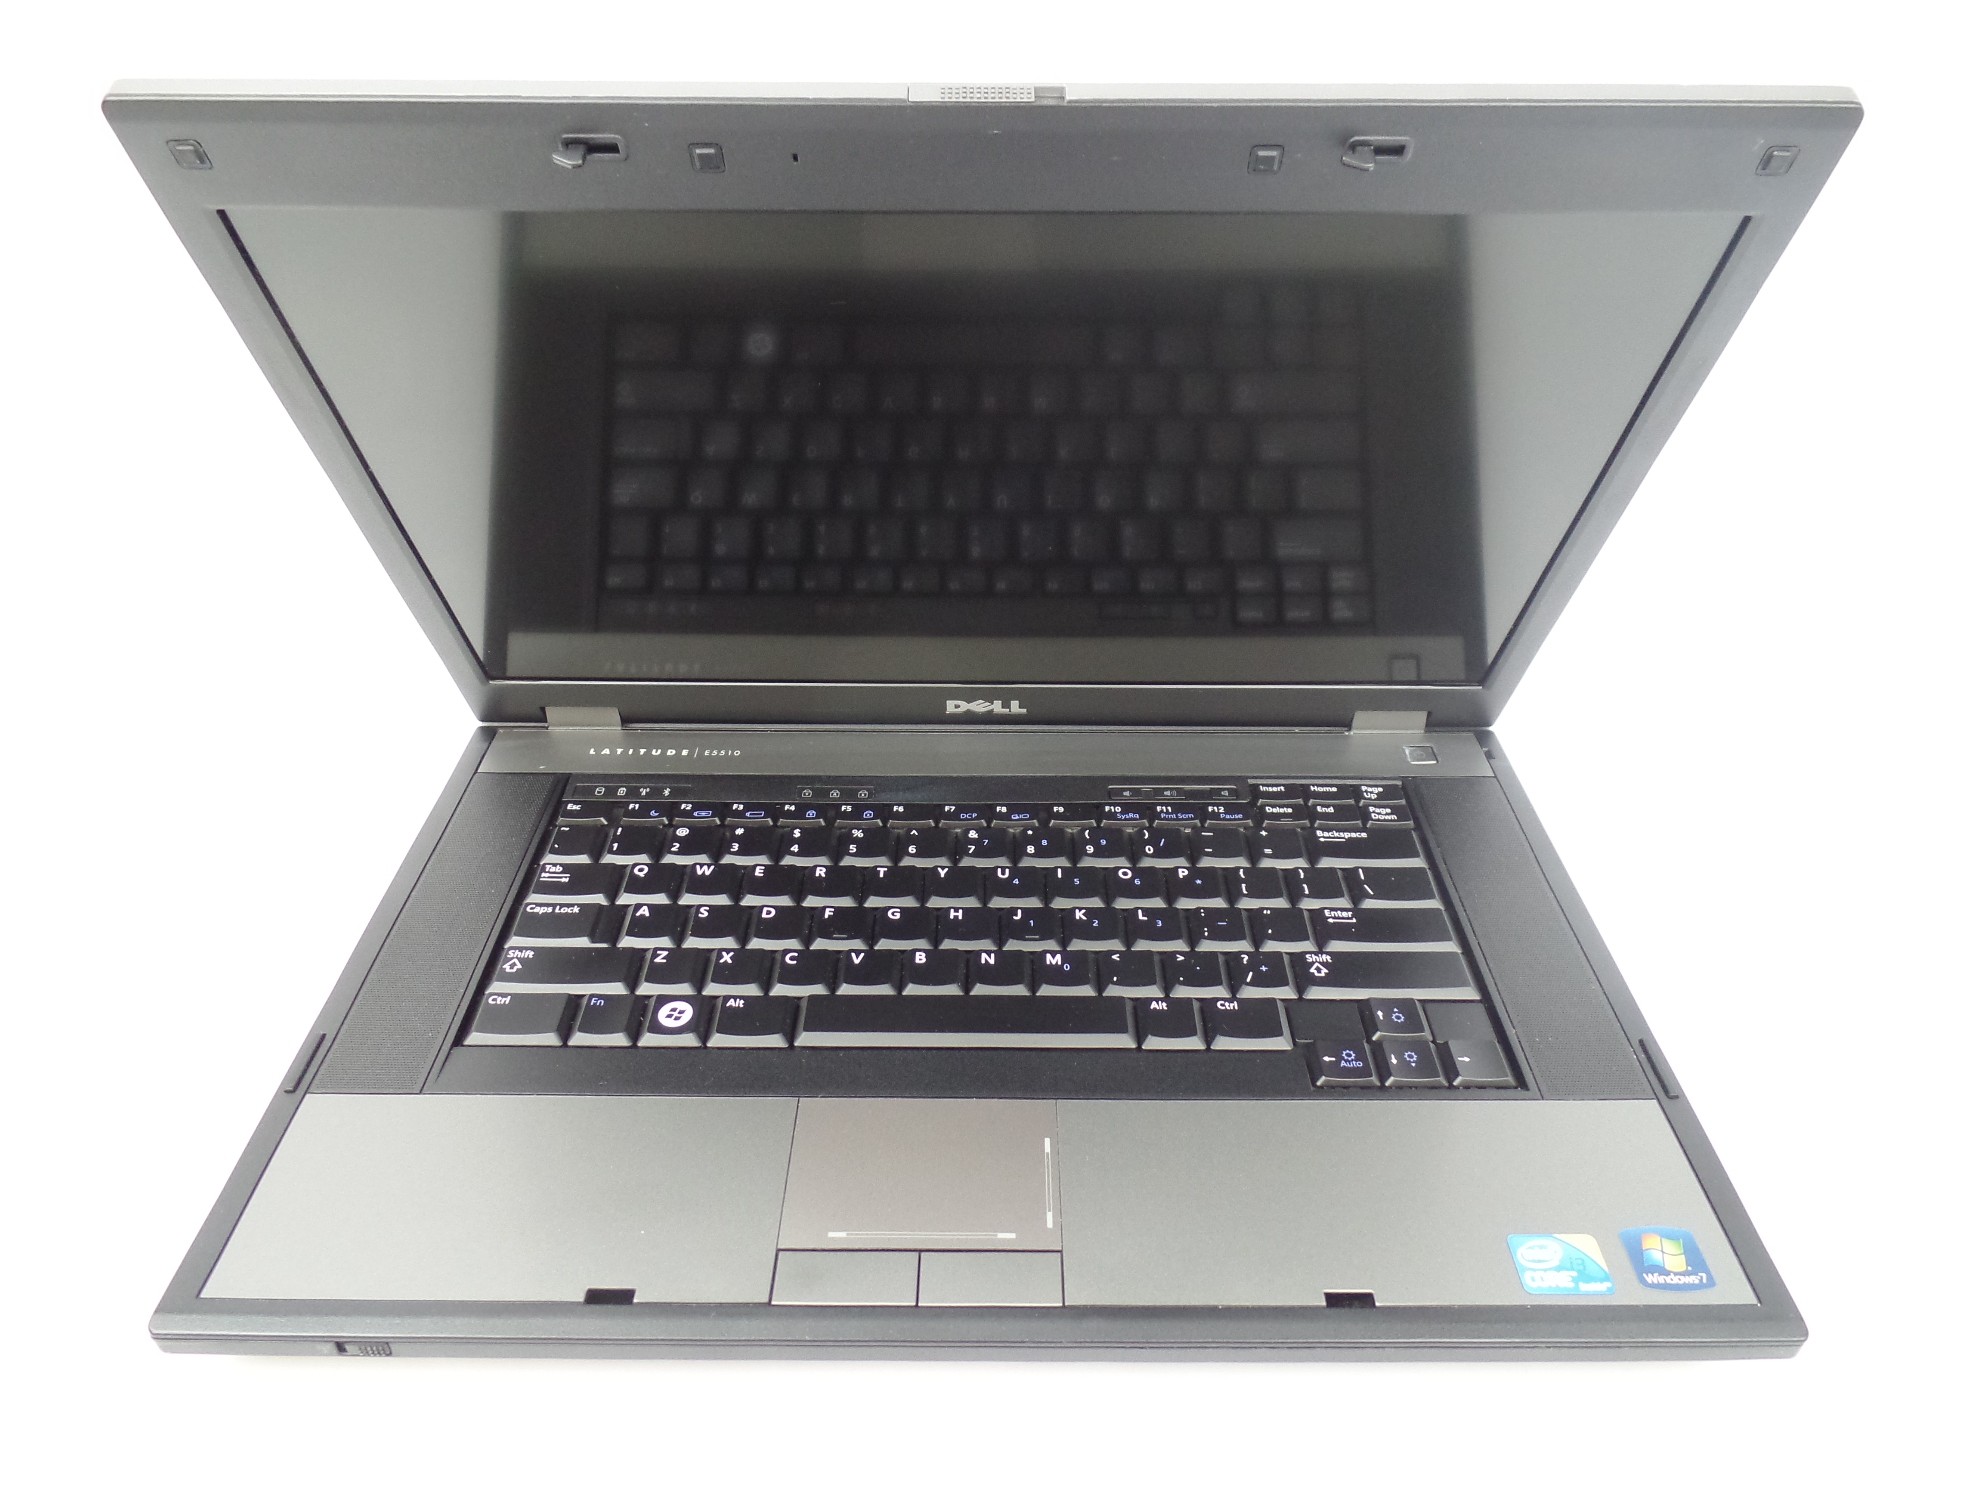 Dell Latitude E5510 15 6 Hd Core I3 M370 2 4ghz 3gb 160gb Hdd W7h Laptop U